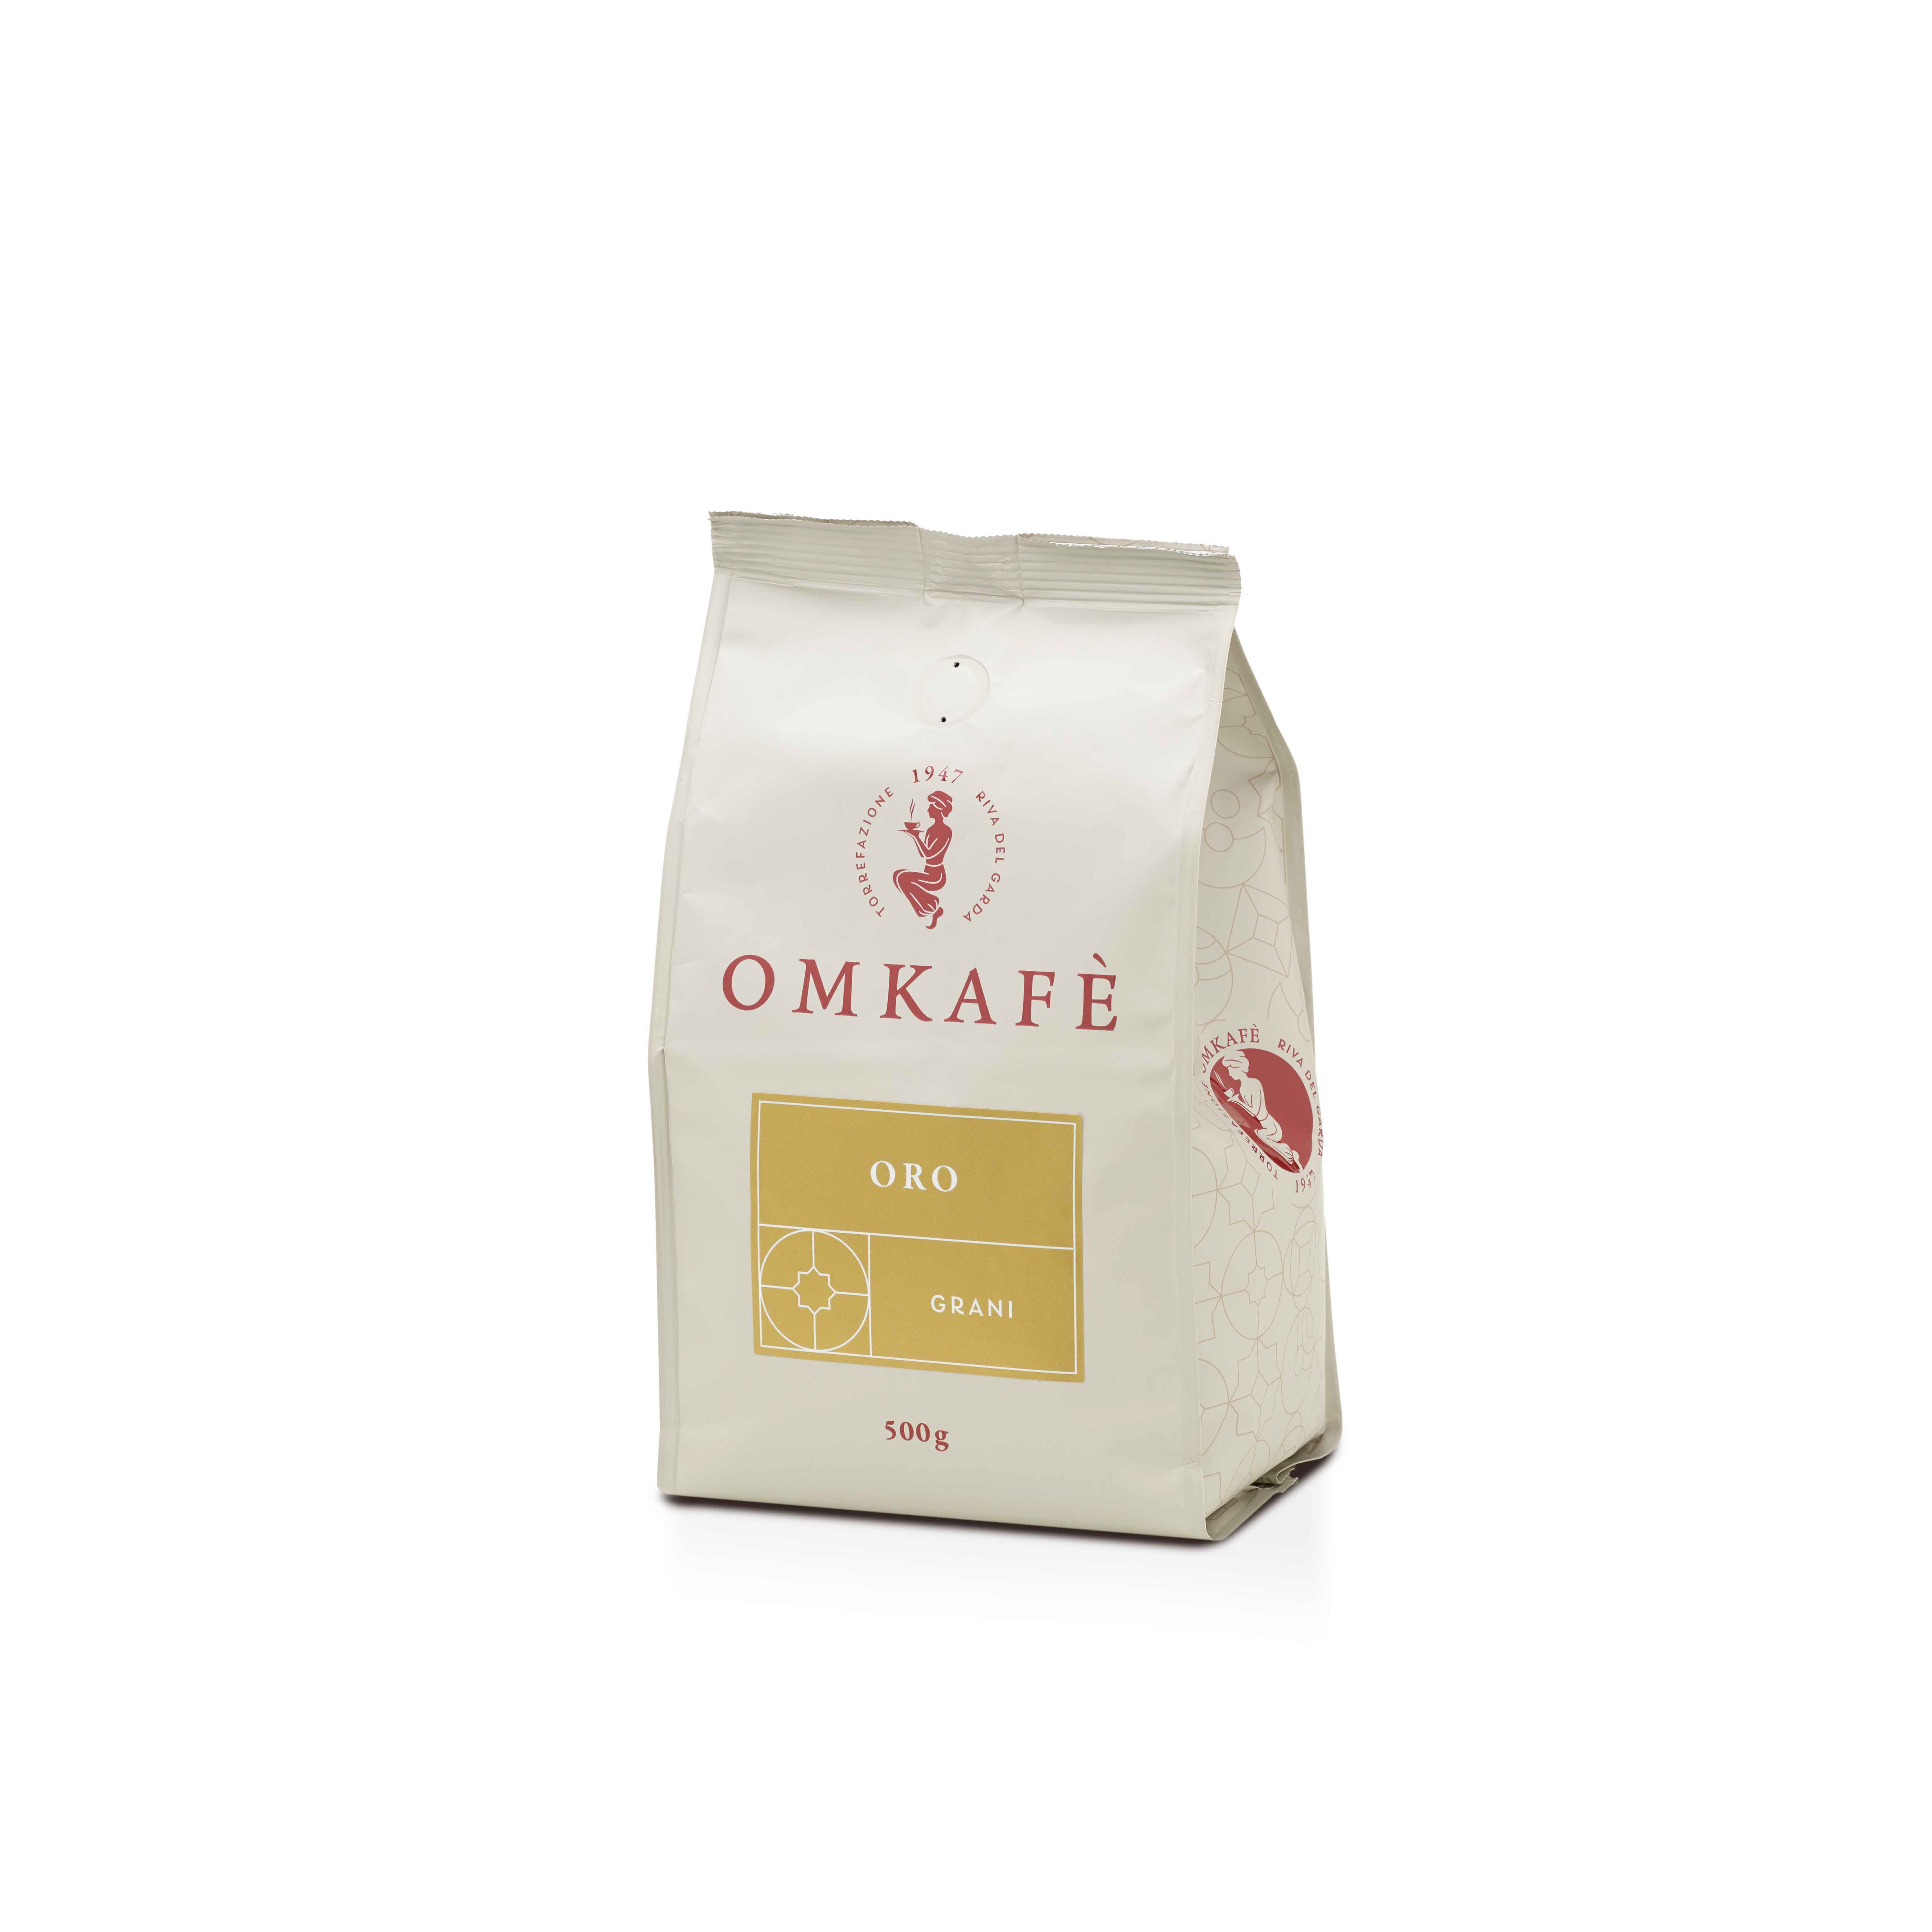 Omkafè Oro Espresso 500g Bohnen